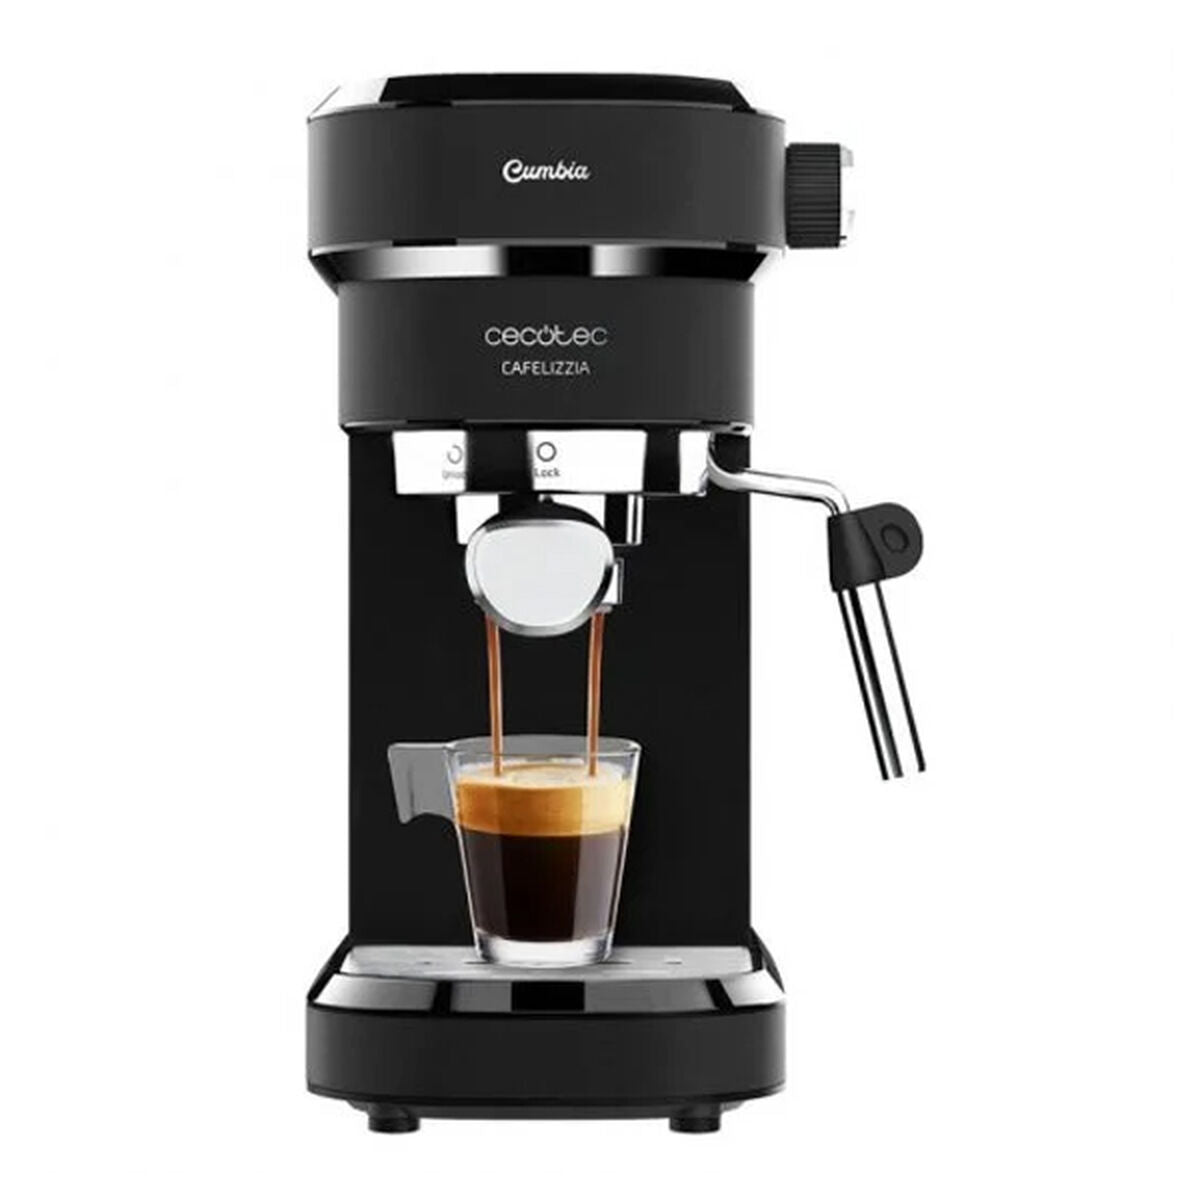 Kaffeemaschine Cecotec Cafelizzia 790 Schwarz 1350 W - CA International 